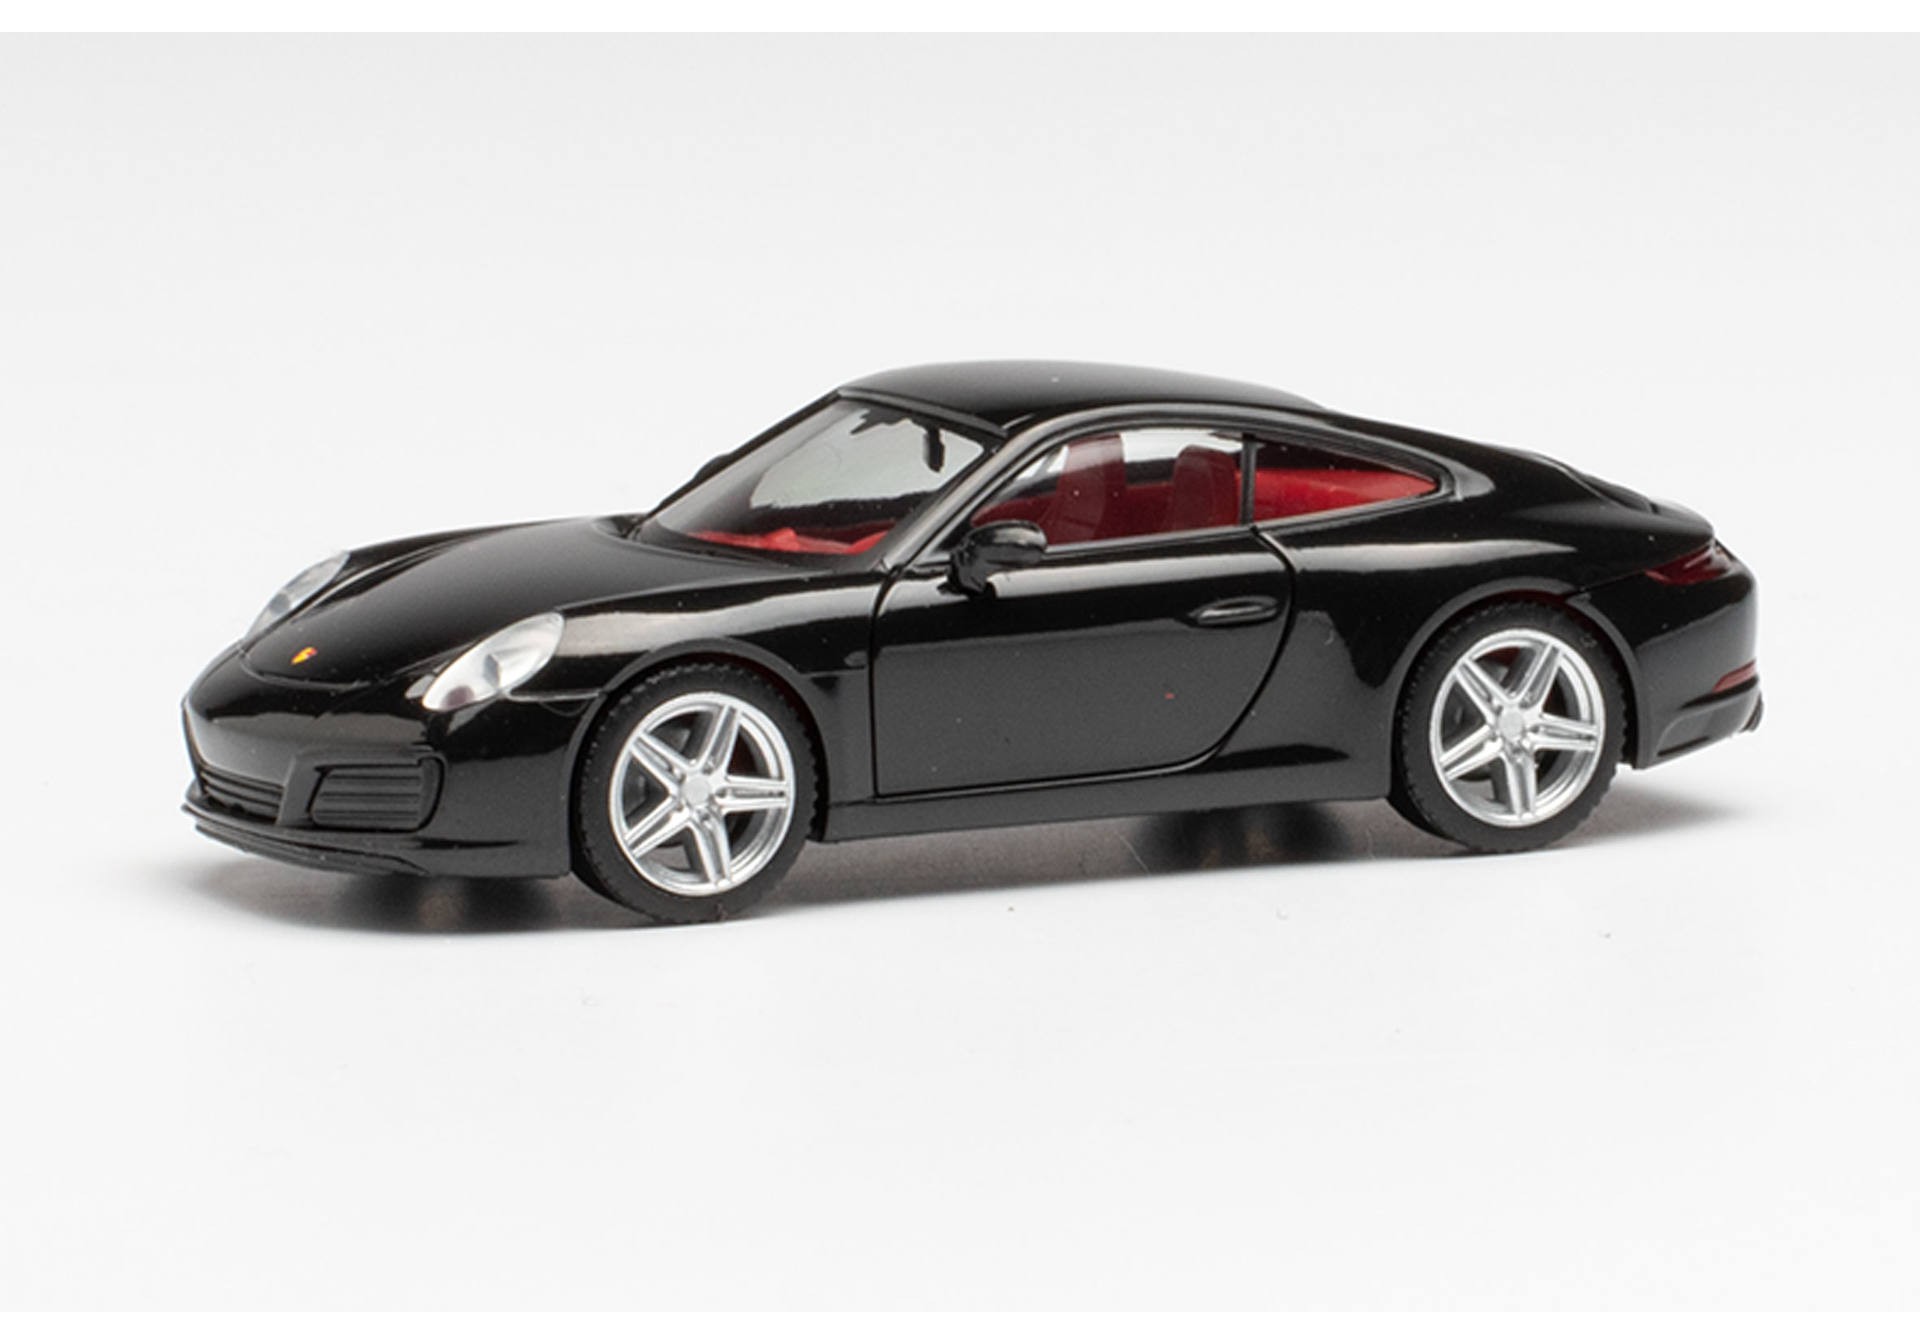 Herpa 028646-002 Porsche 911 Carrera 4S Metallic Schwarz Modellfahrzeug H0 1:87